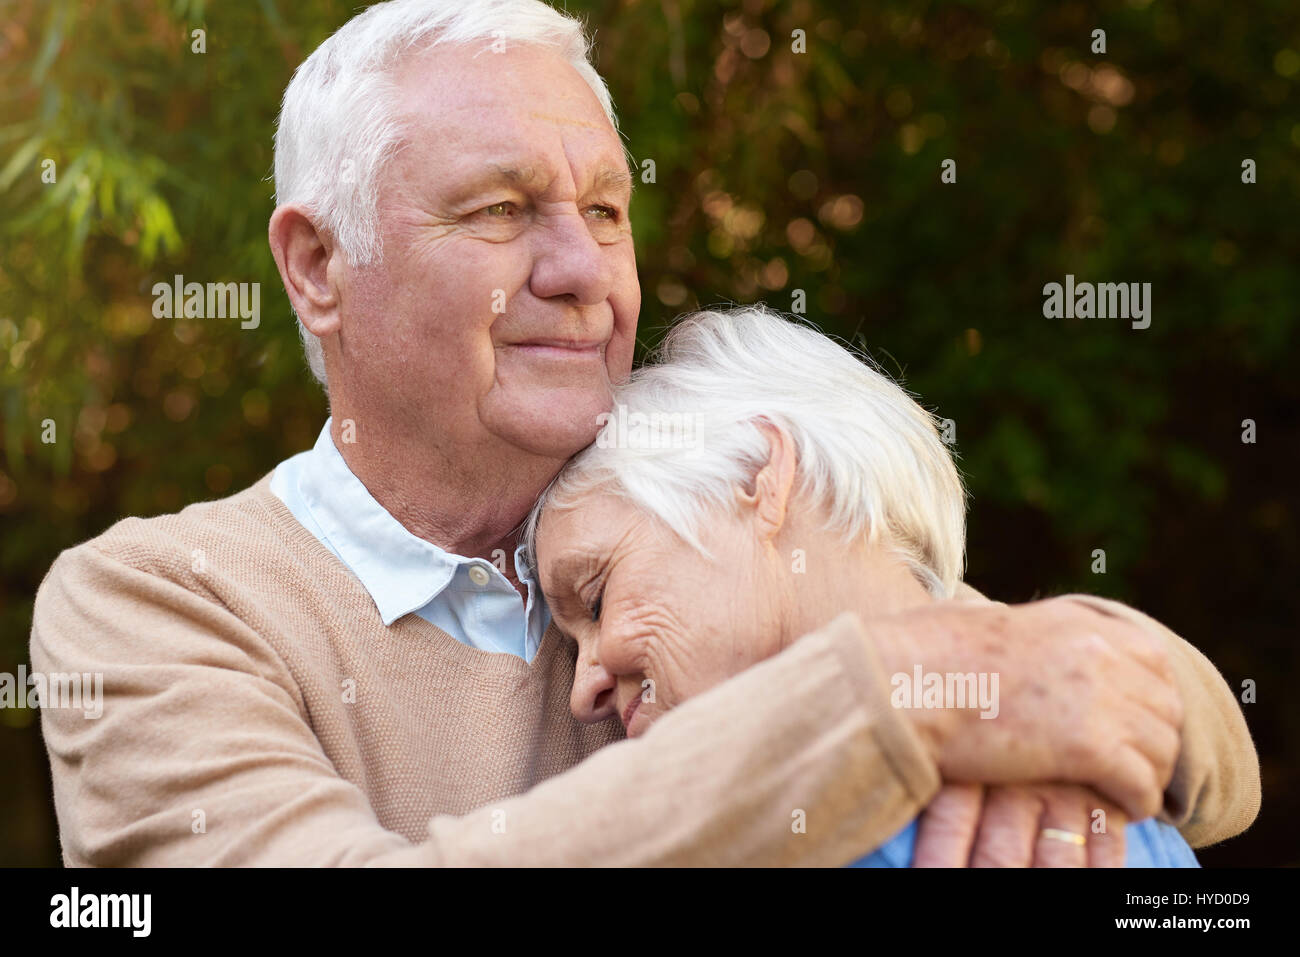 Romantic senior homme chaudement serrant ses femme, à l'extérieur Banque D'Images